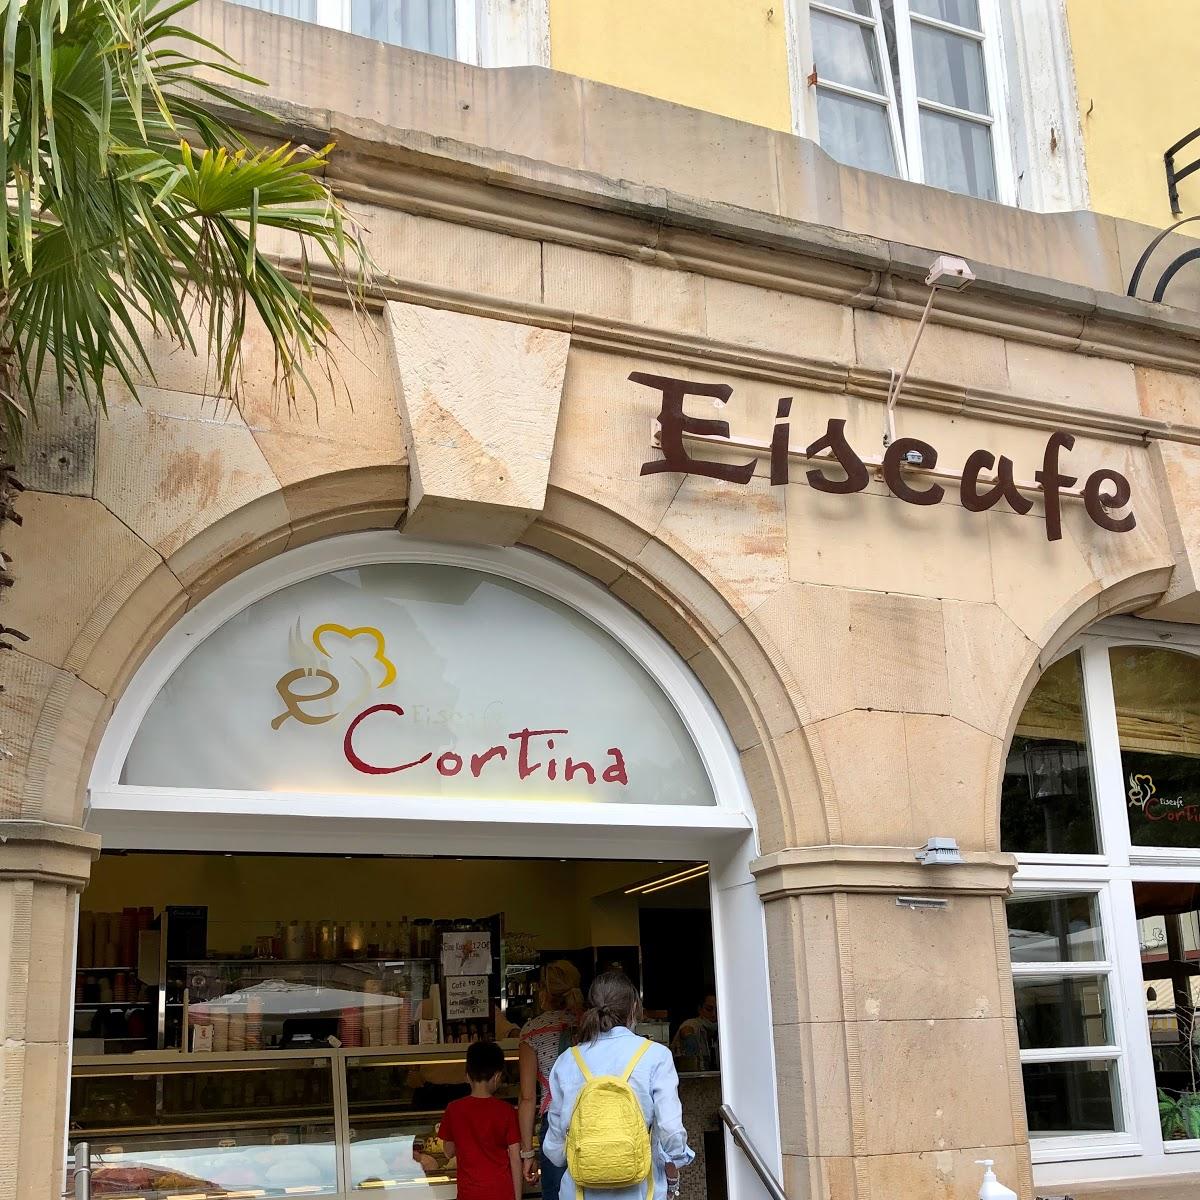 Restaurant "Eiscafé Cortina" in Bad Dürkheim